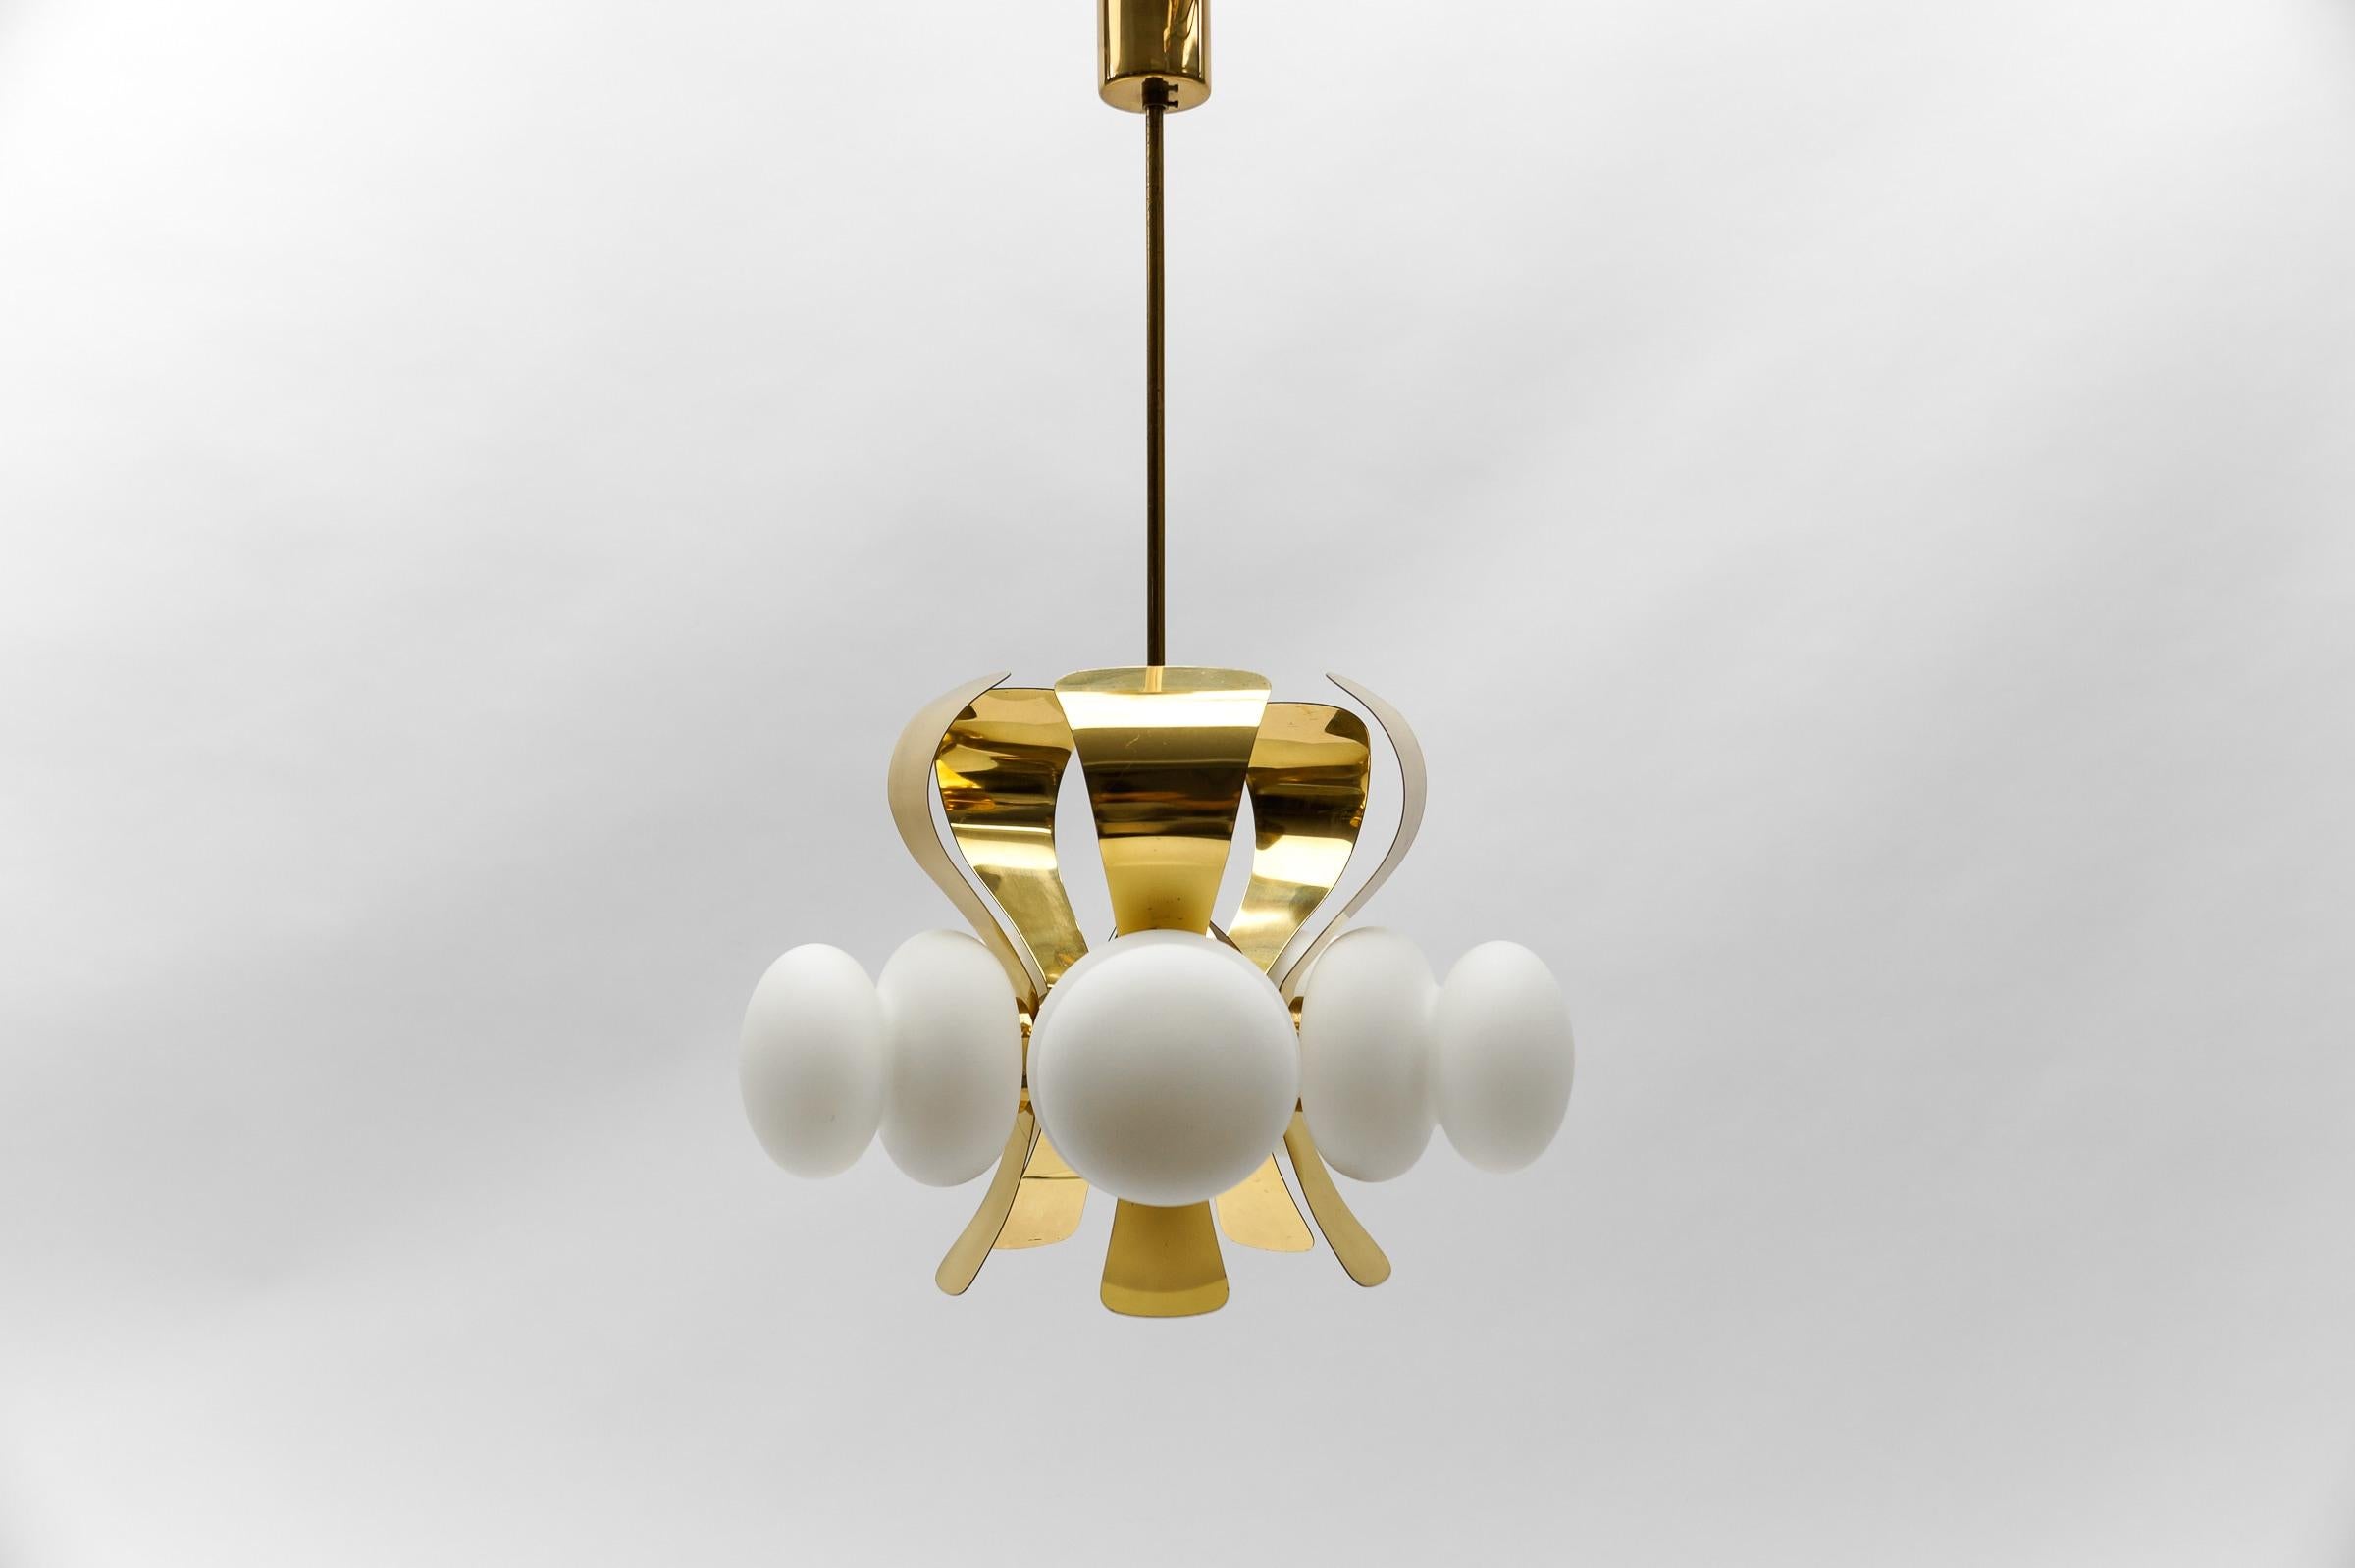 Große moderne Orbit- oder Sputnik-Lampe aus der Mitte des Jahrhunderts mit 12 Opalglaskugeln

Durchmesser: 64 cm (25,19 Zoll)
Höhe: 83 cm (33,07 Zoll)

Ausgeführt in Glas, Metall und Messing. Die Lampe benötigt 10 x E27 / E26 Edison